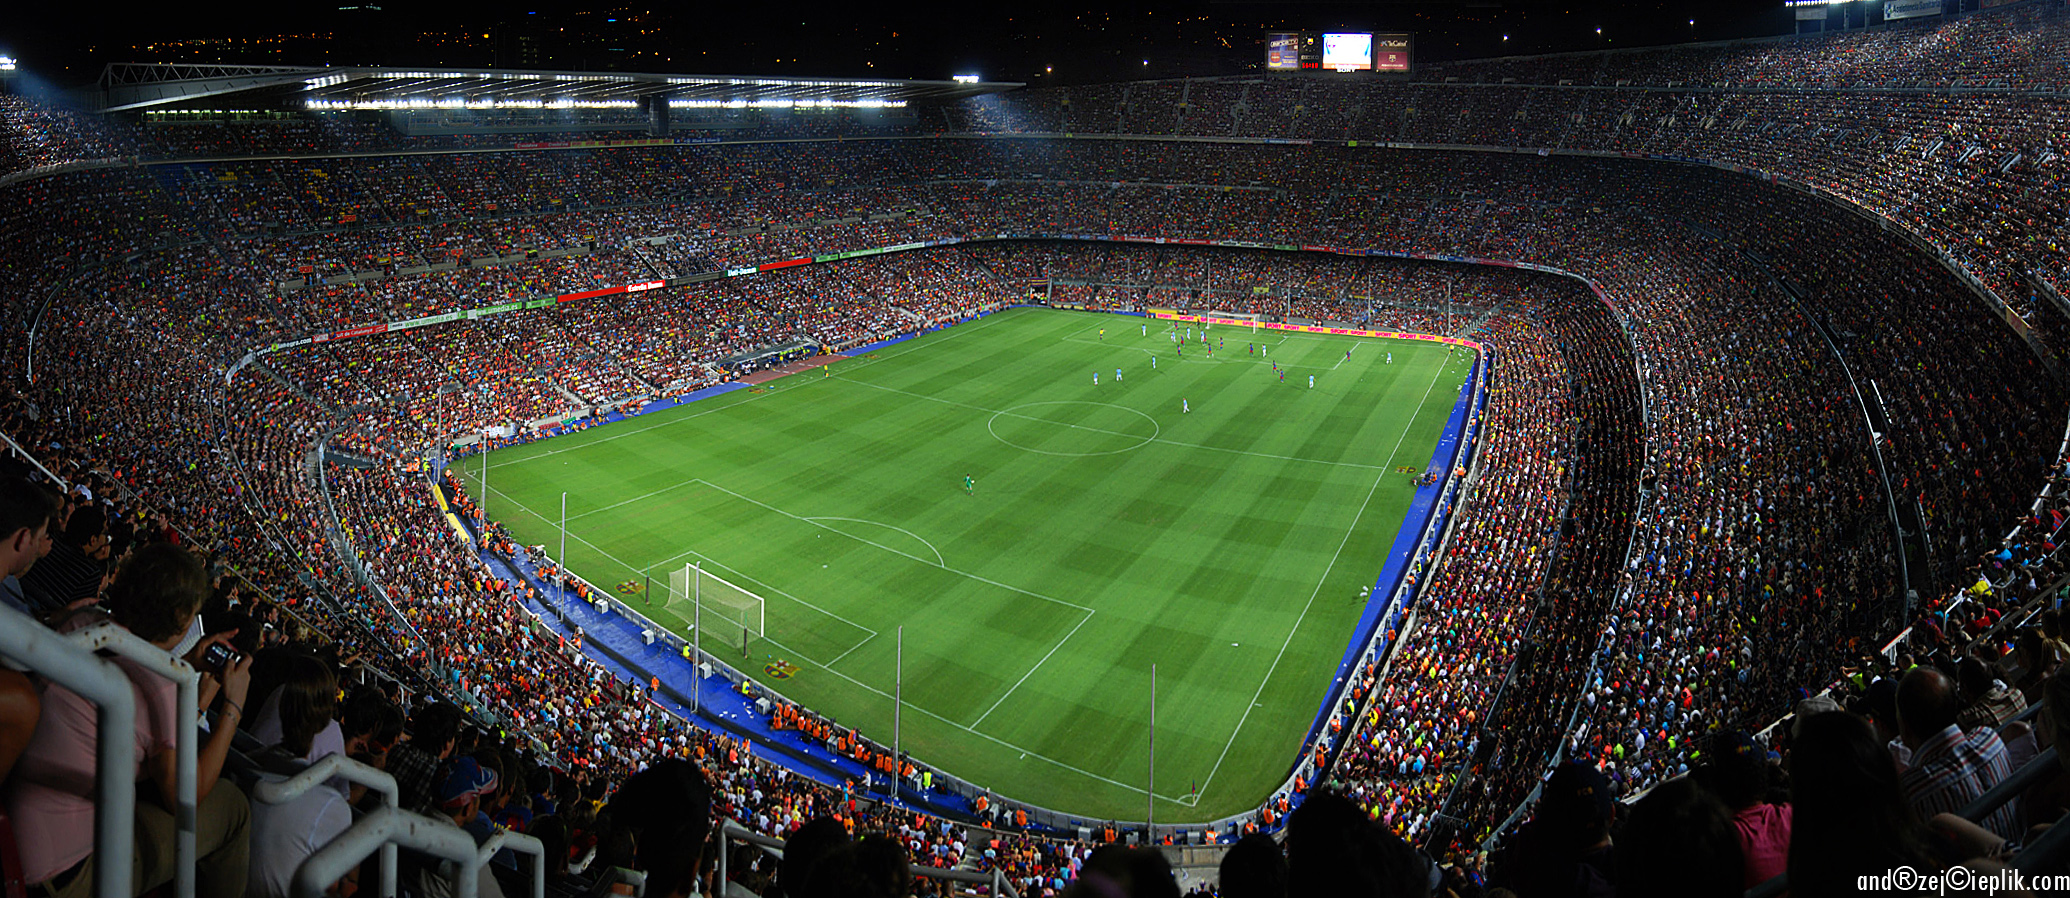 Ну стадион. Камп ноу стадион внутри. Камп ноу Эдит. Стадион Барселоны. Стадион Камп ноу в Барселоне фото.